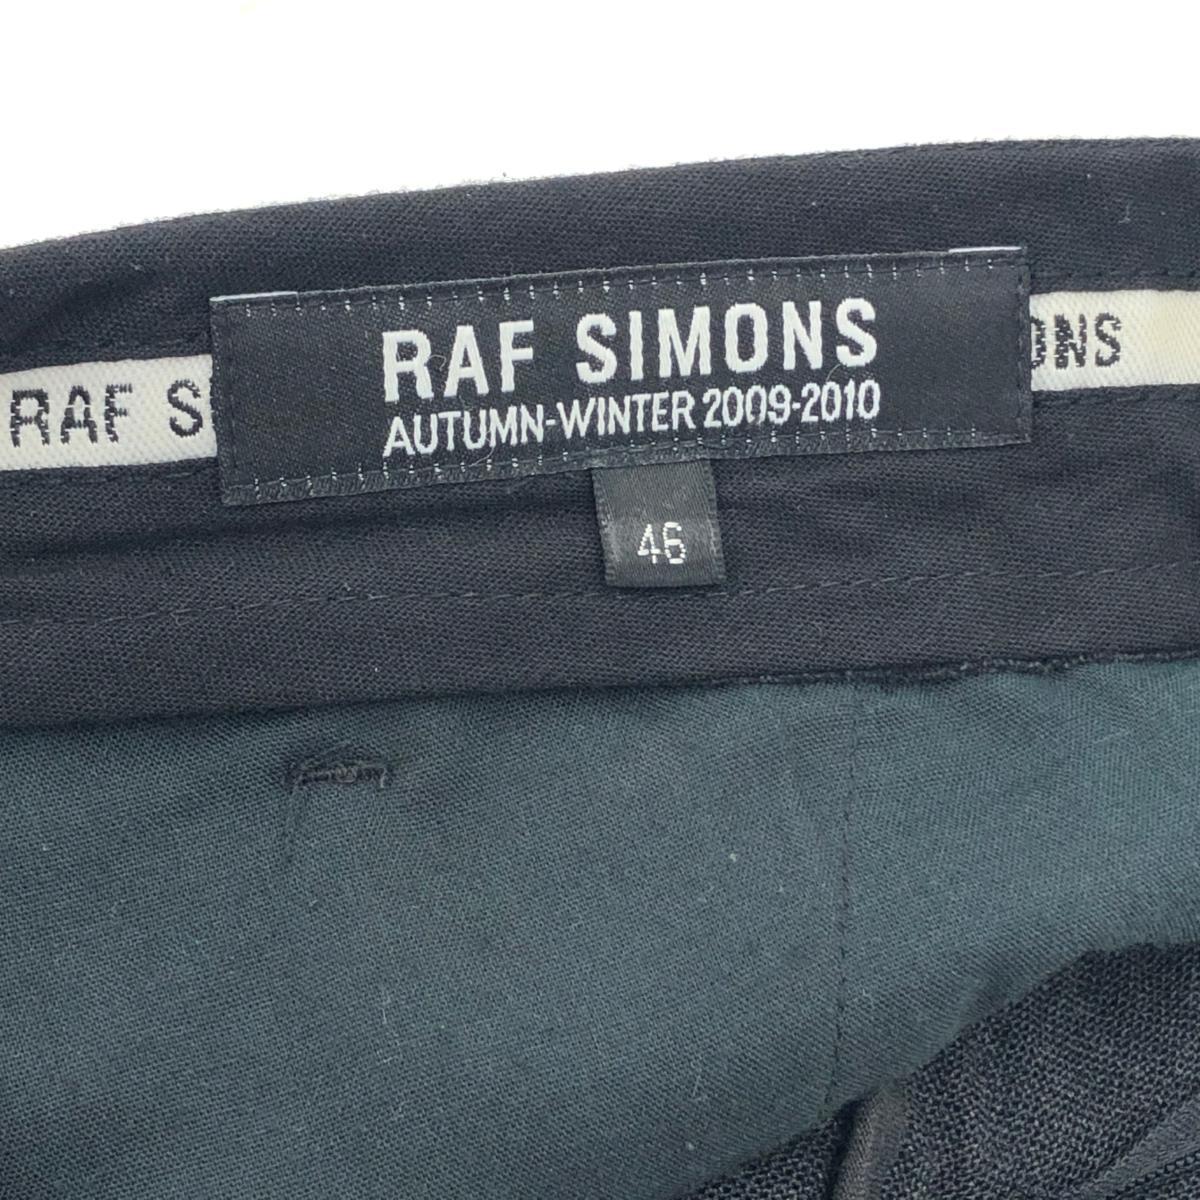 *RAF SIMONS Raf Simons слаксы брюки 46* серый мужской 2009-2010 низ 